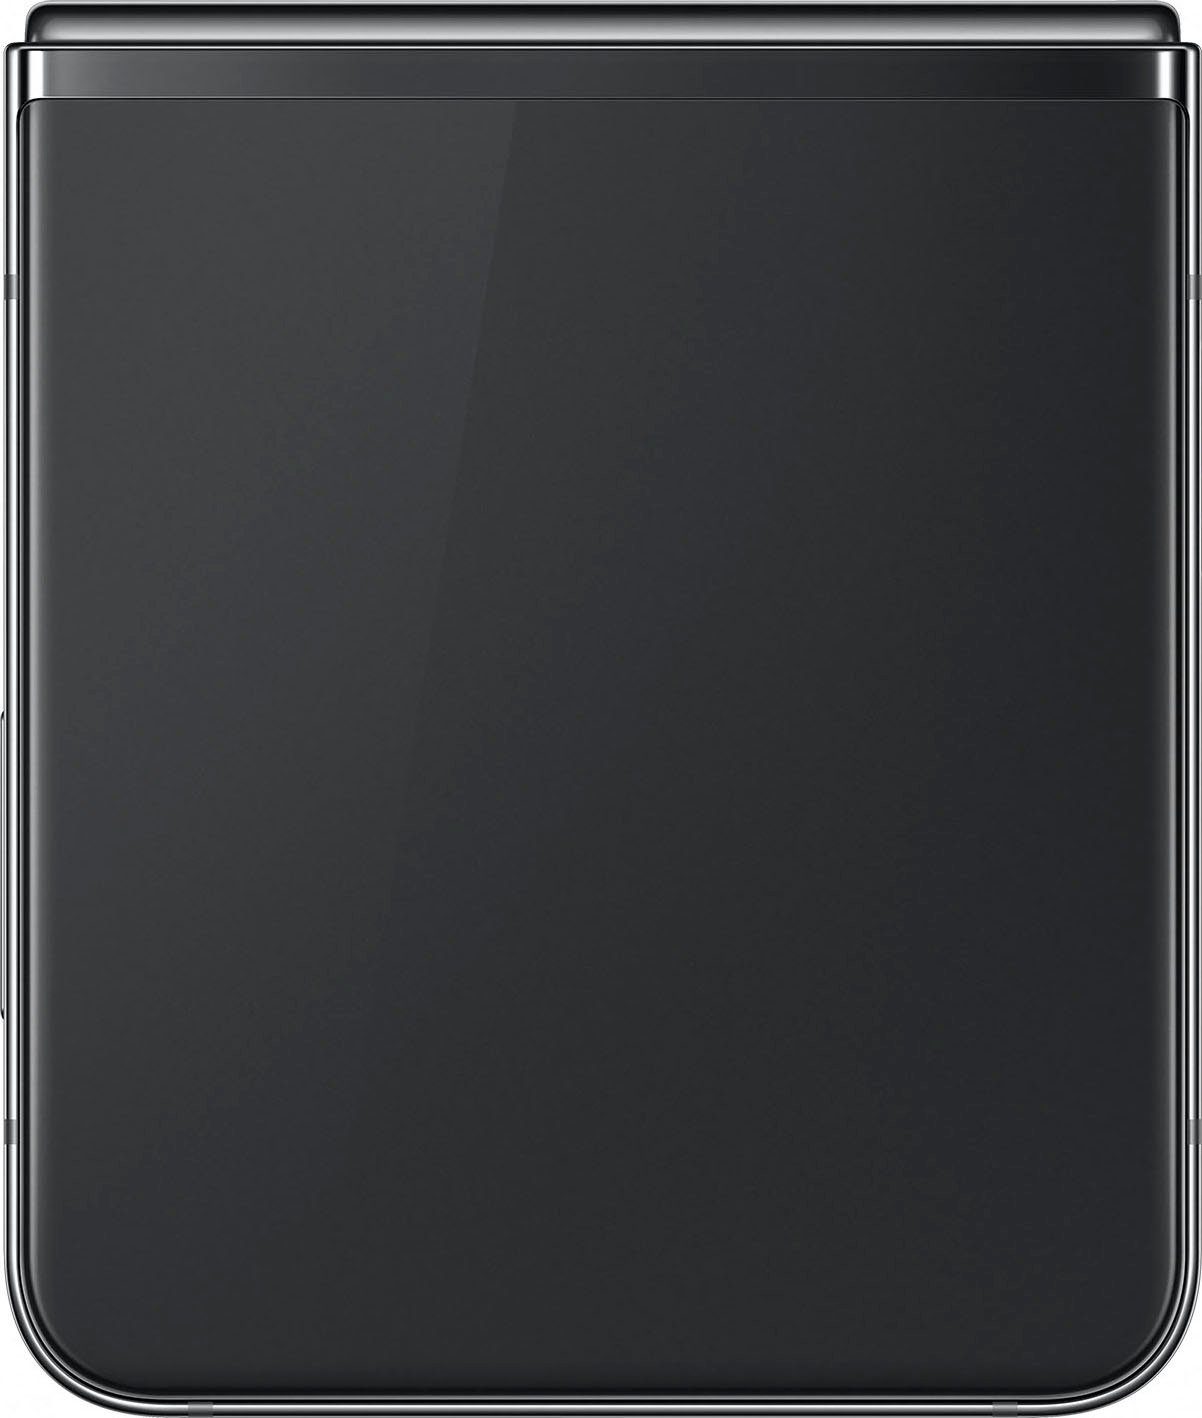 Samsung Galaxy Z Smartphone 5 MP Kamera) Flip Speicherplatz, cm/6,7 12 (17,03 Zoll, 256 GB Graphite